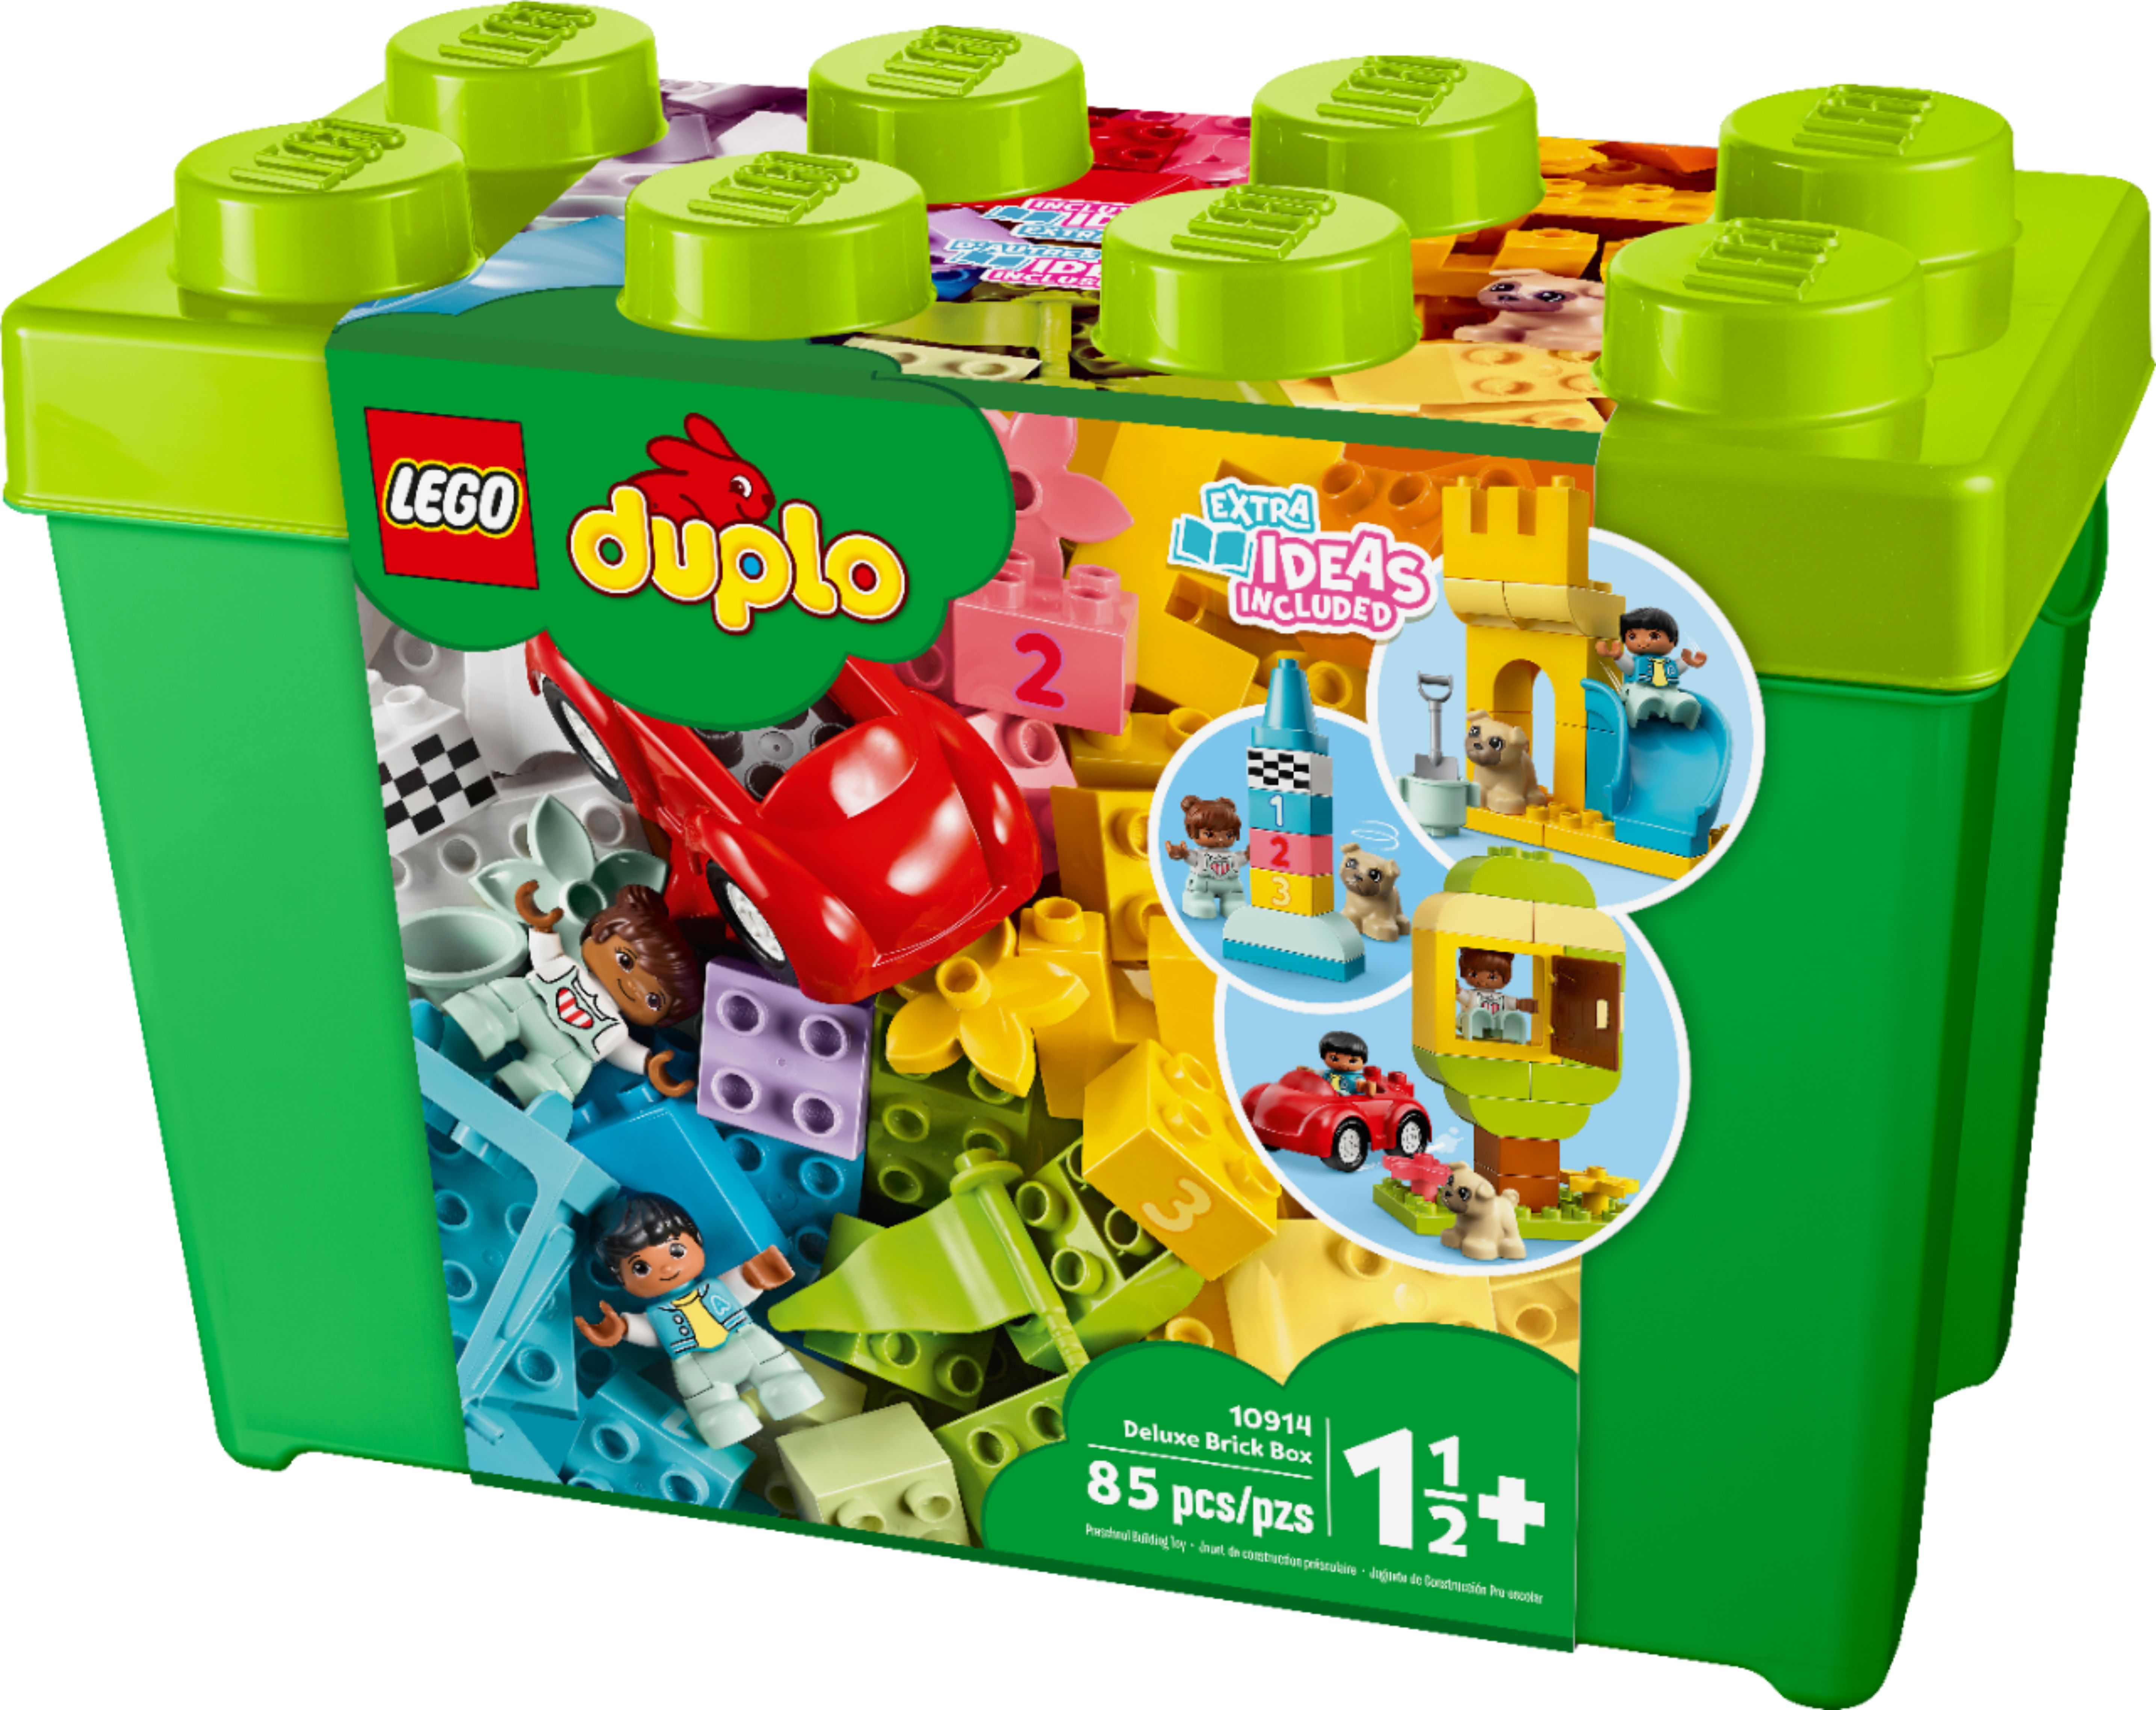 LEGO DUPLO Deluxe Brick Box 10914 - Best Buy